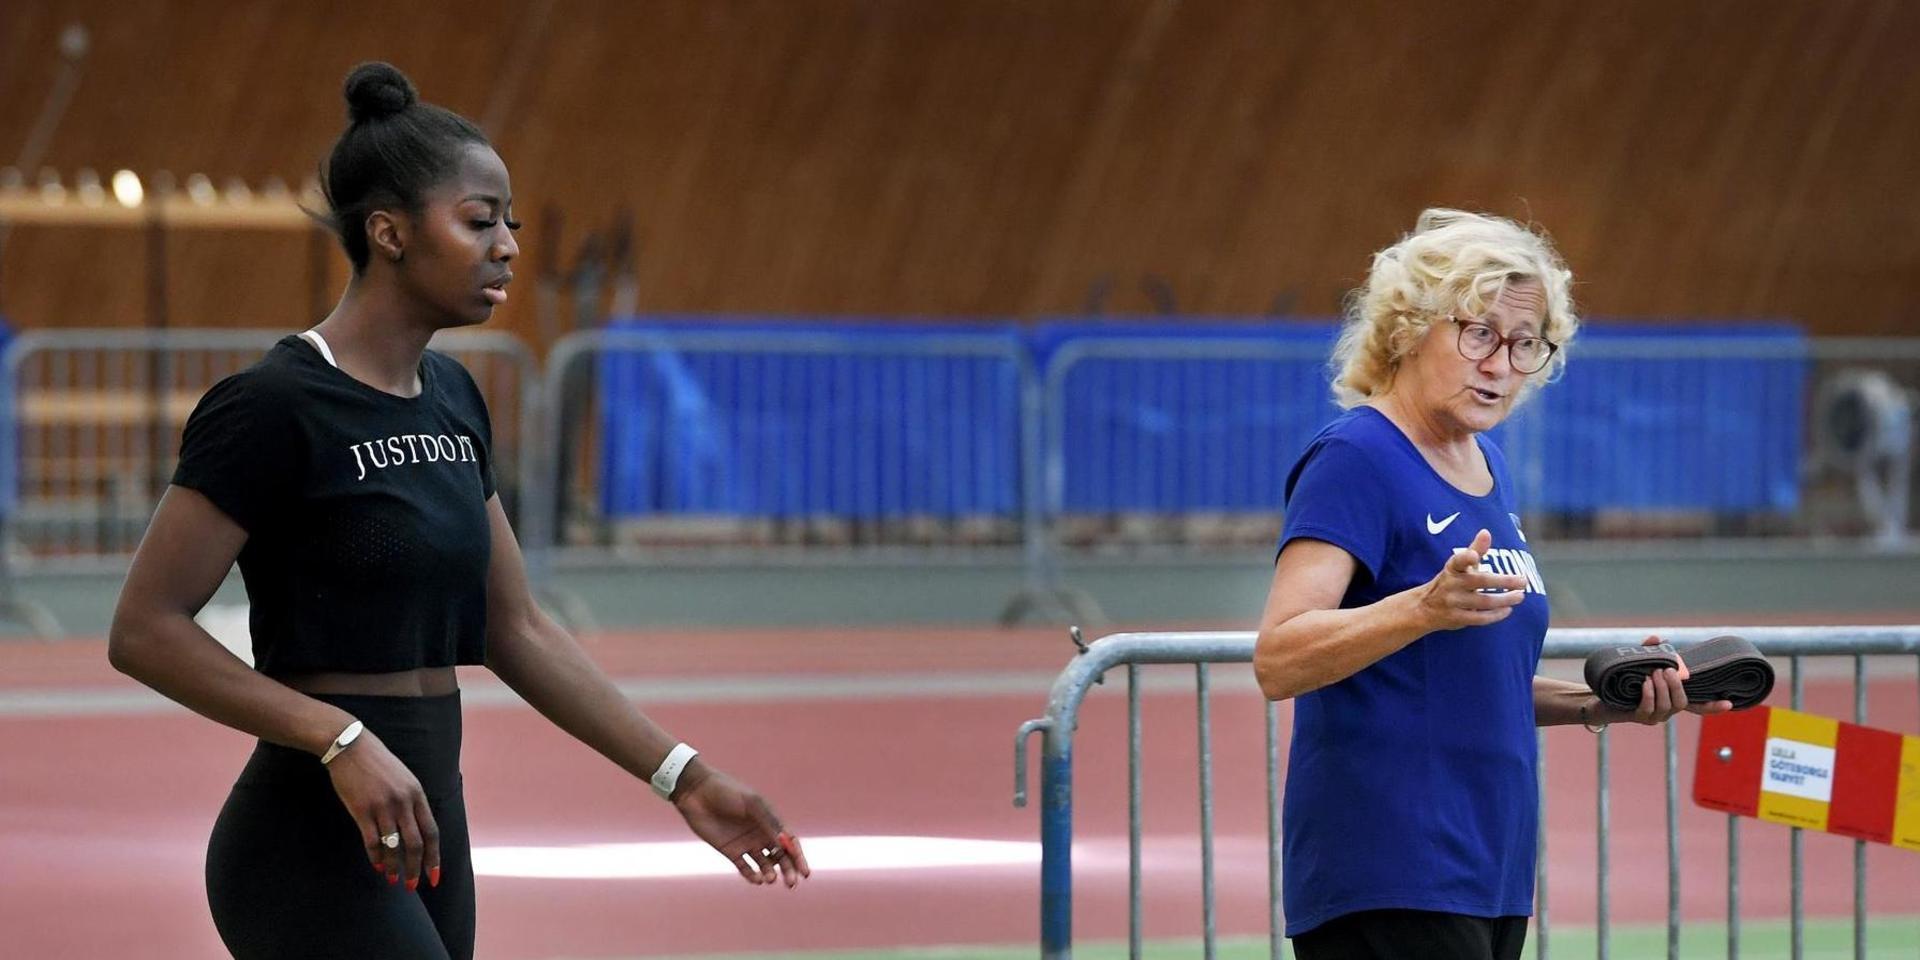 OS-hoppet Khaddi Sagnia i samspråk med sin tränare Katrin Klaup.